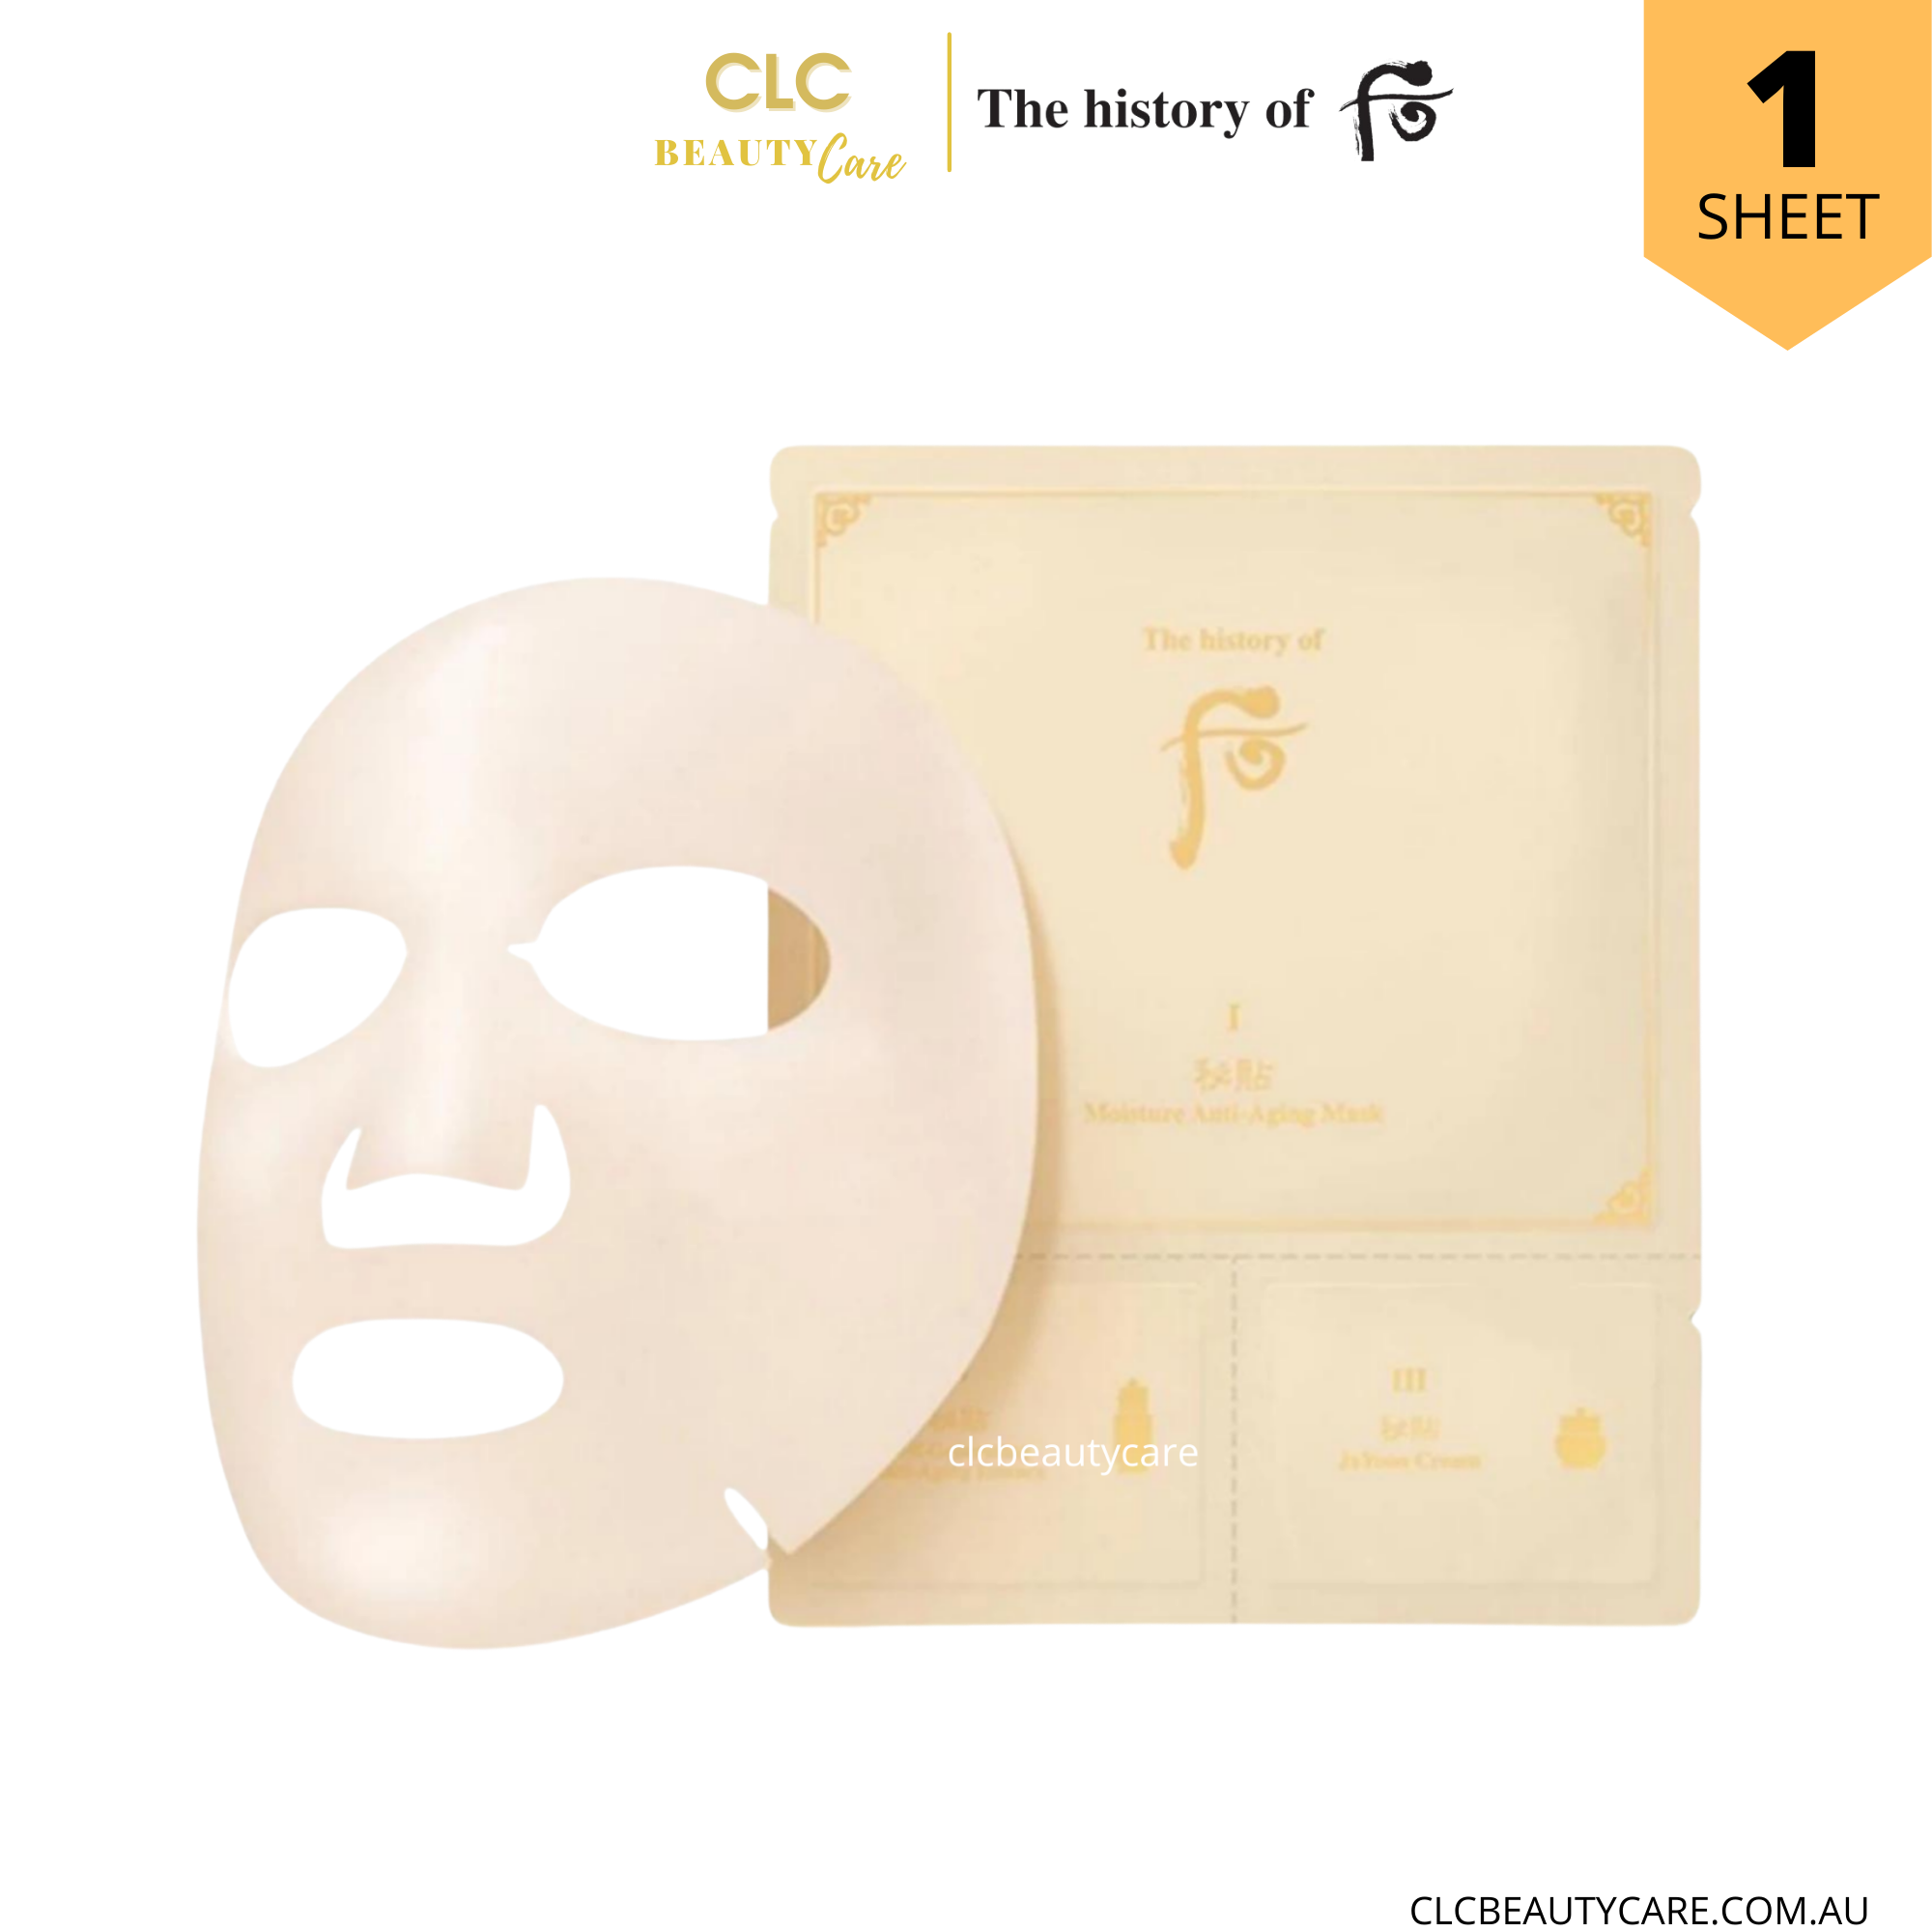 Mặt nạ dưỡng ẩm chống lão hóa The History of Whoo Bichup Moisture Anti-aging 3 steps - 1 Masks